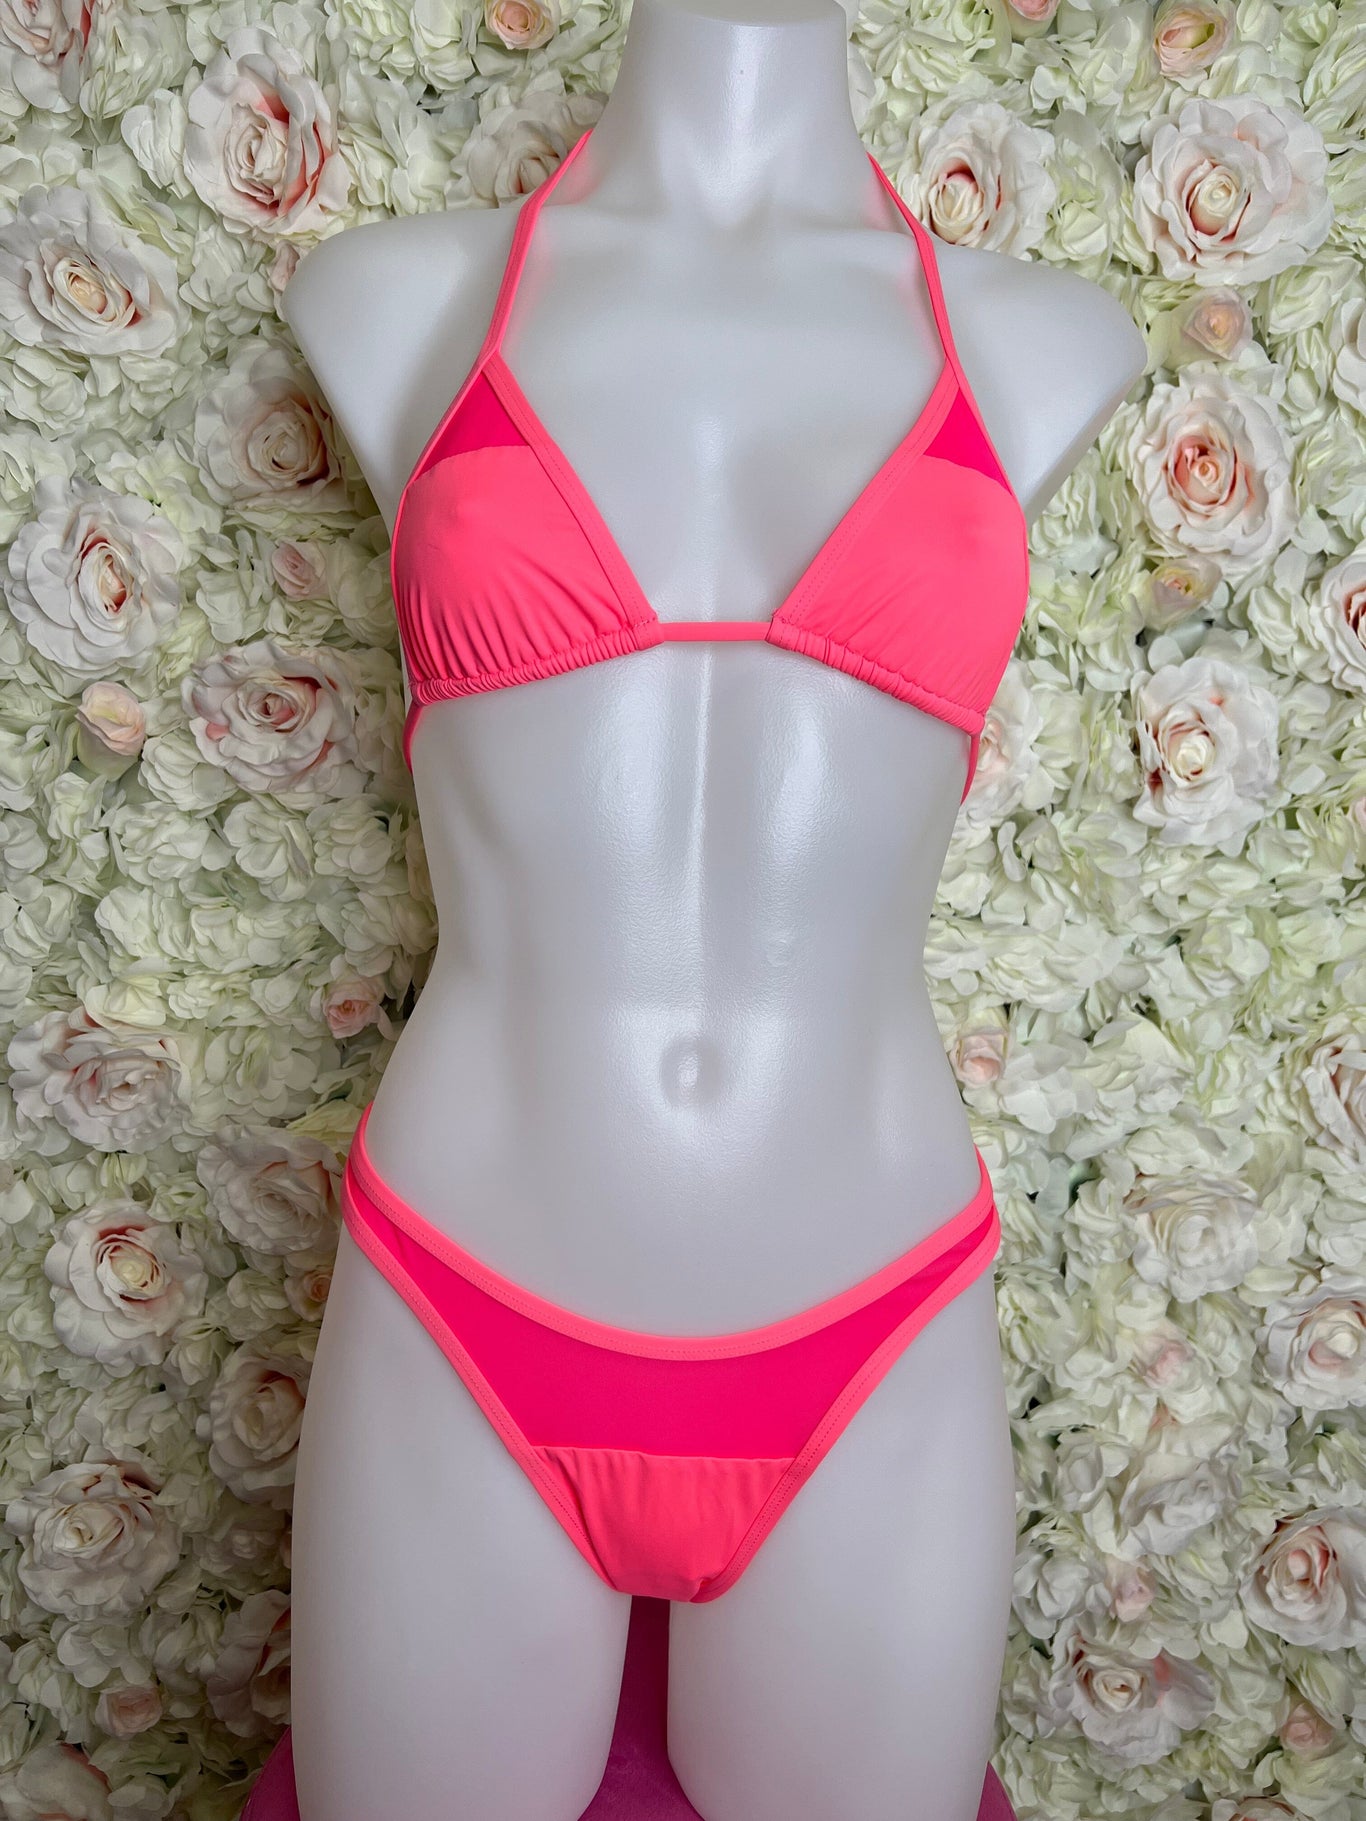 SAMPLE 9 - Berry Beachy Swimwear